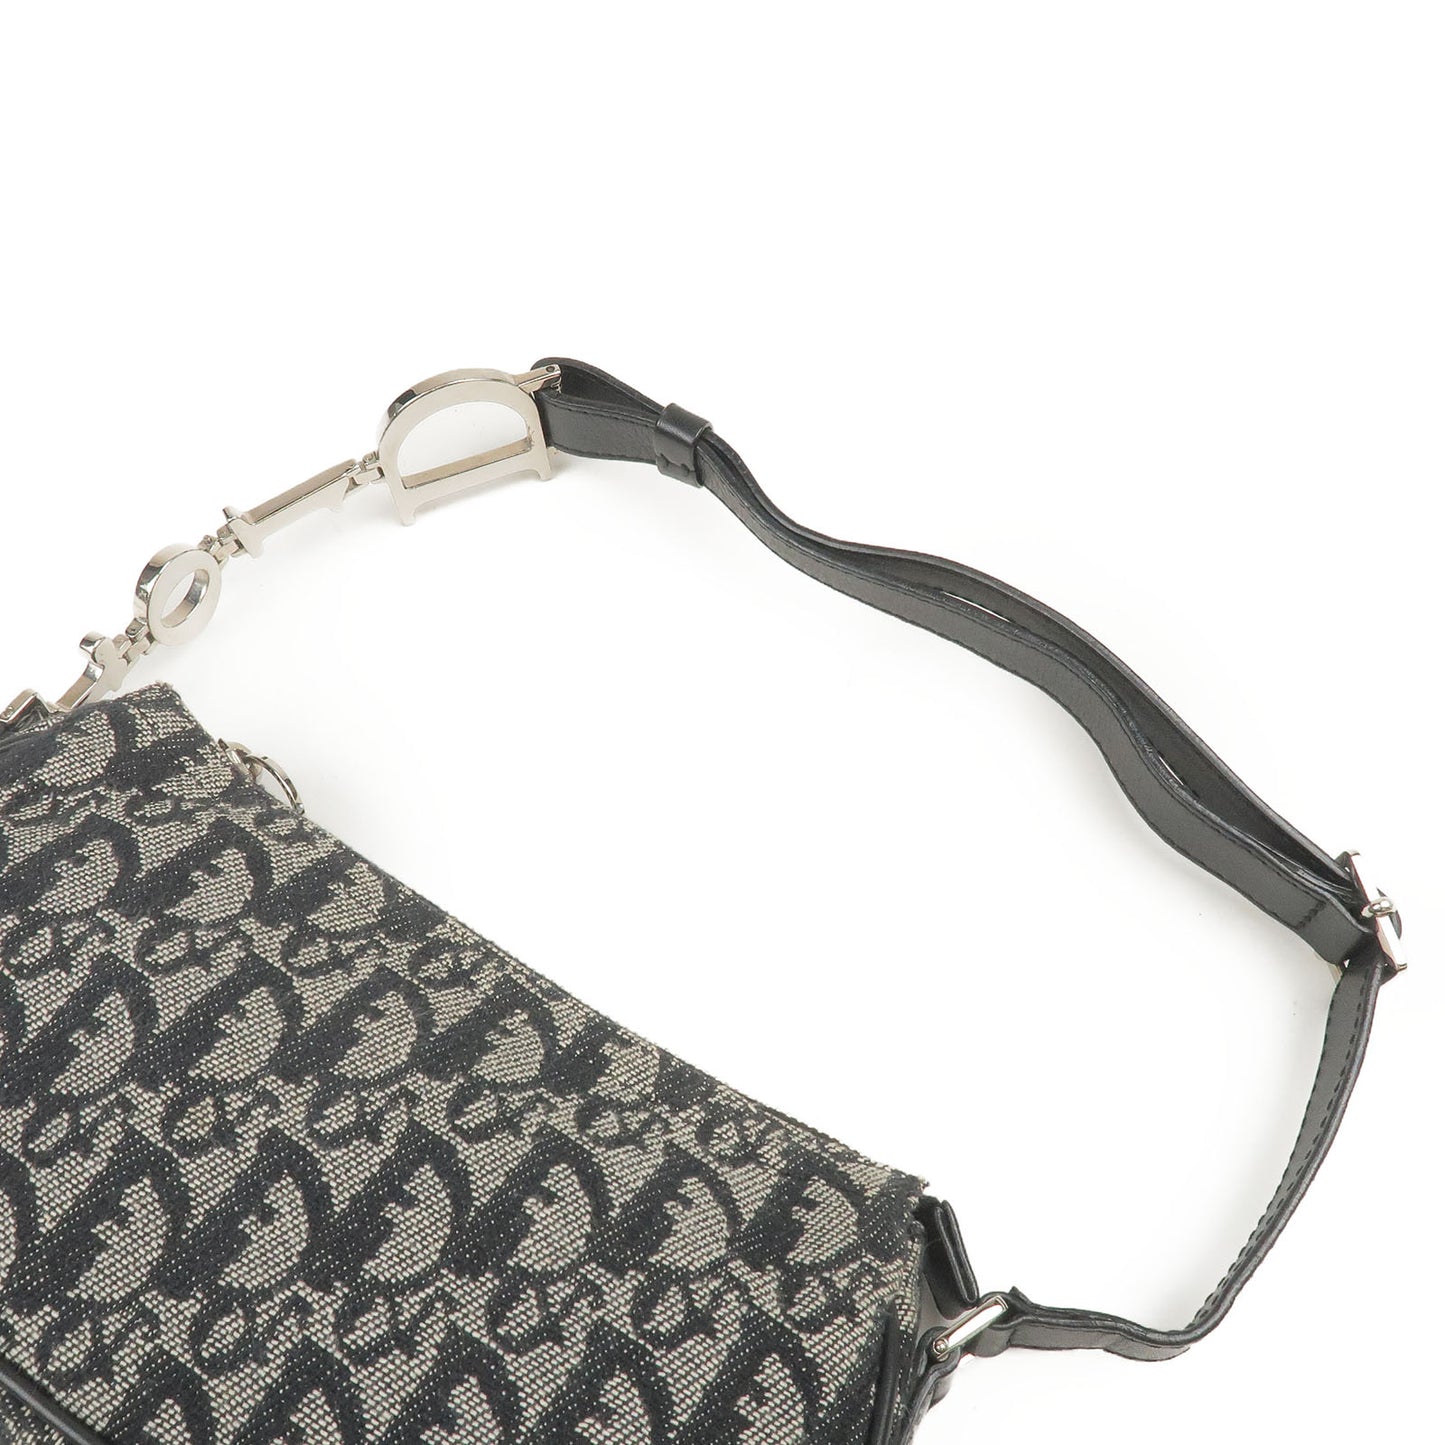 Authenticated used Christian Dior Trotter Nylon Canvas x Leather Black Women's Shoulder Bag, Adult Unisex, Size: (HxWxD): 22cm x 30cm x 8cm / 8.66'' x